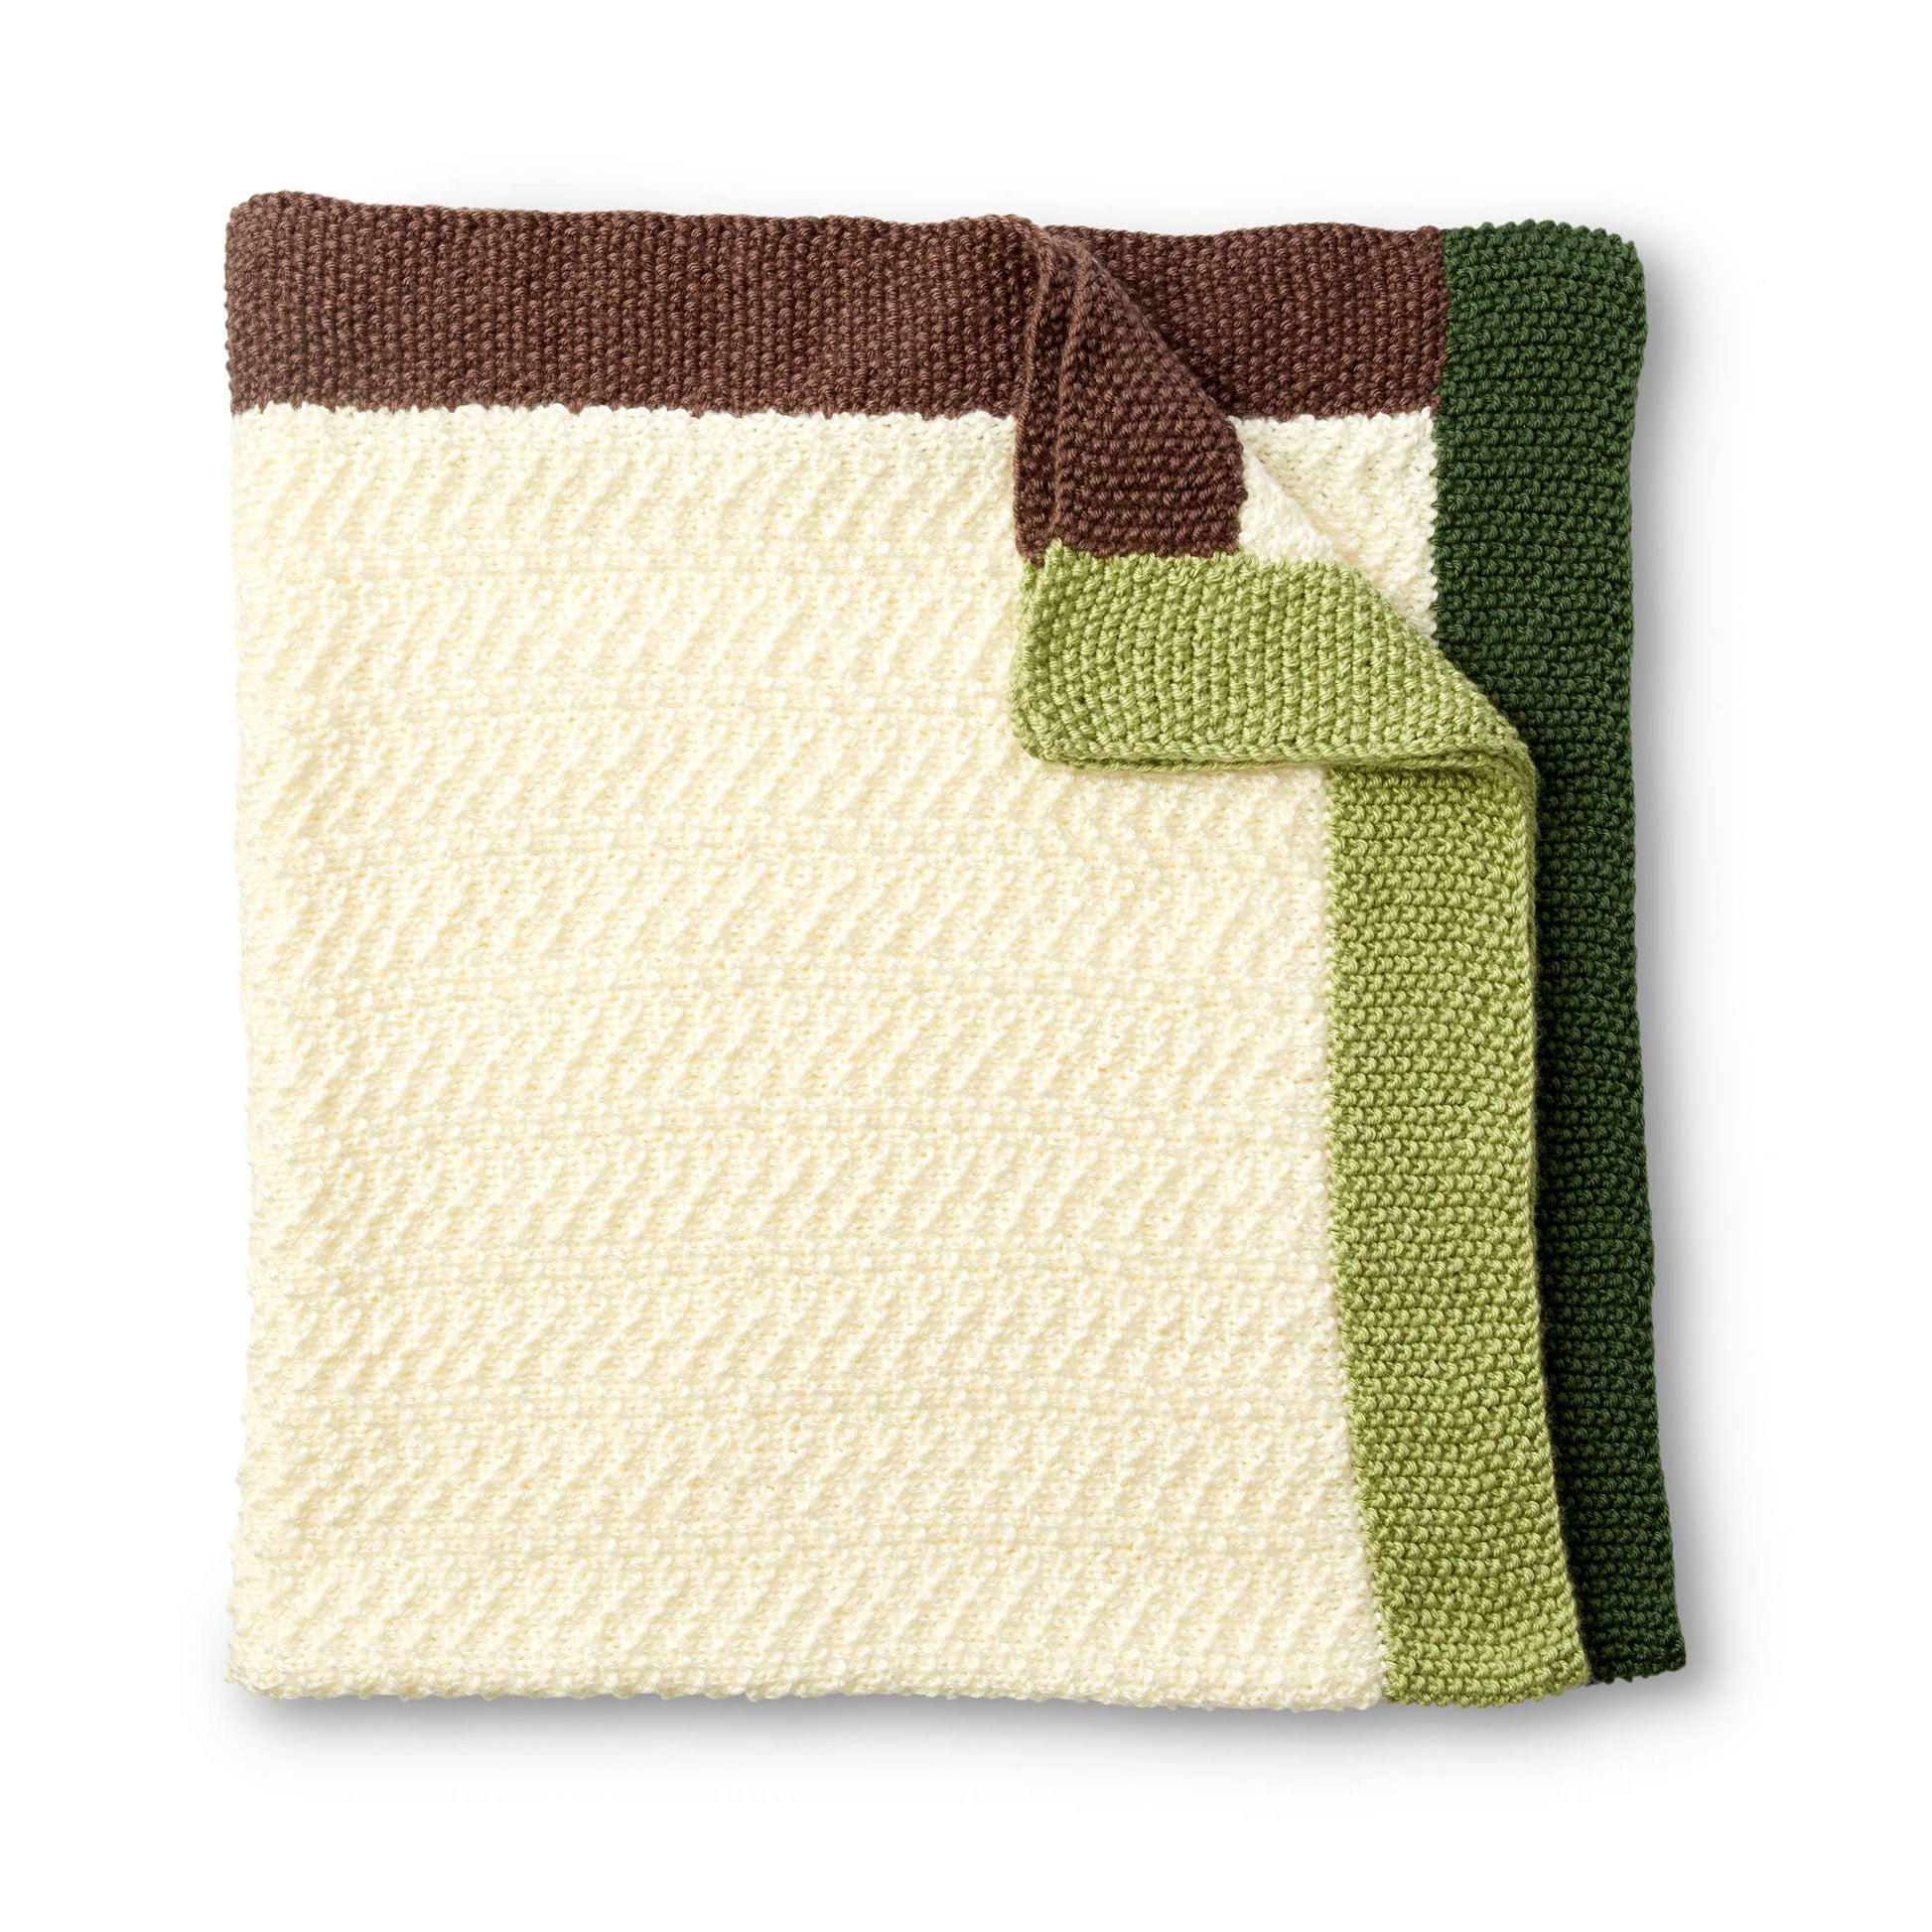 Free Caron Brick Road Knit Baby Blanket Pattern